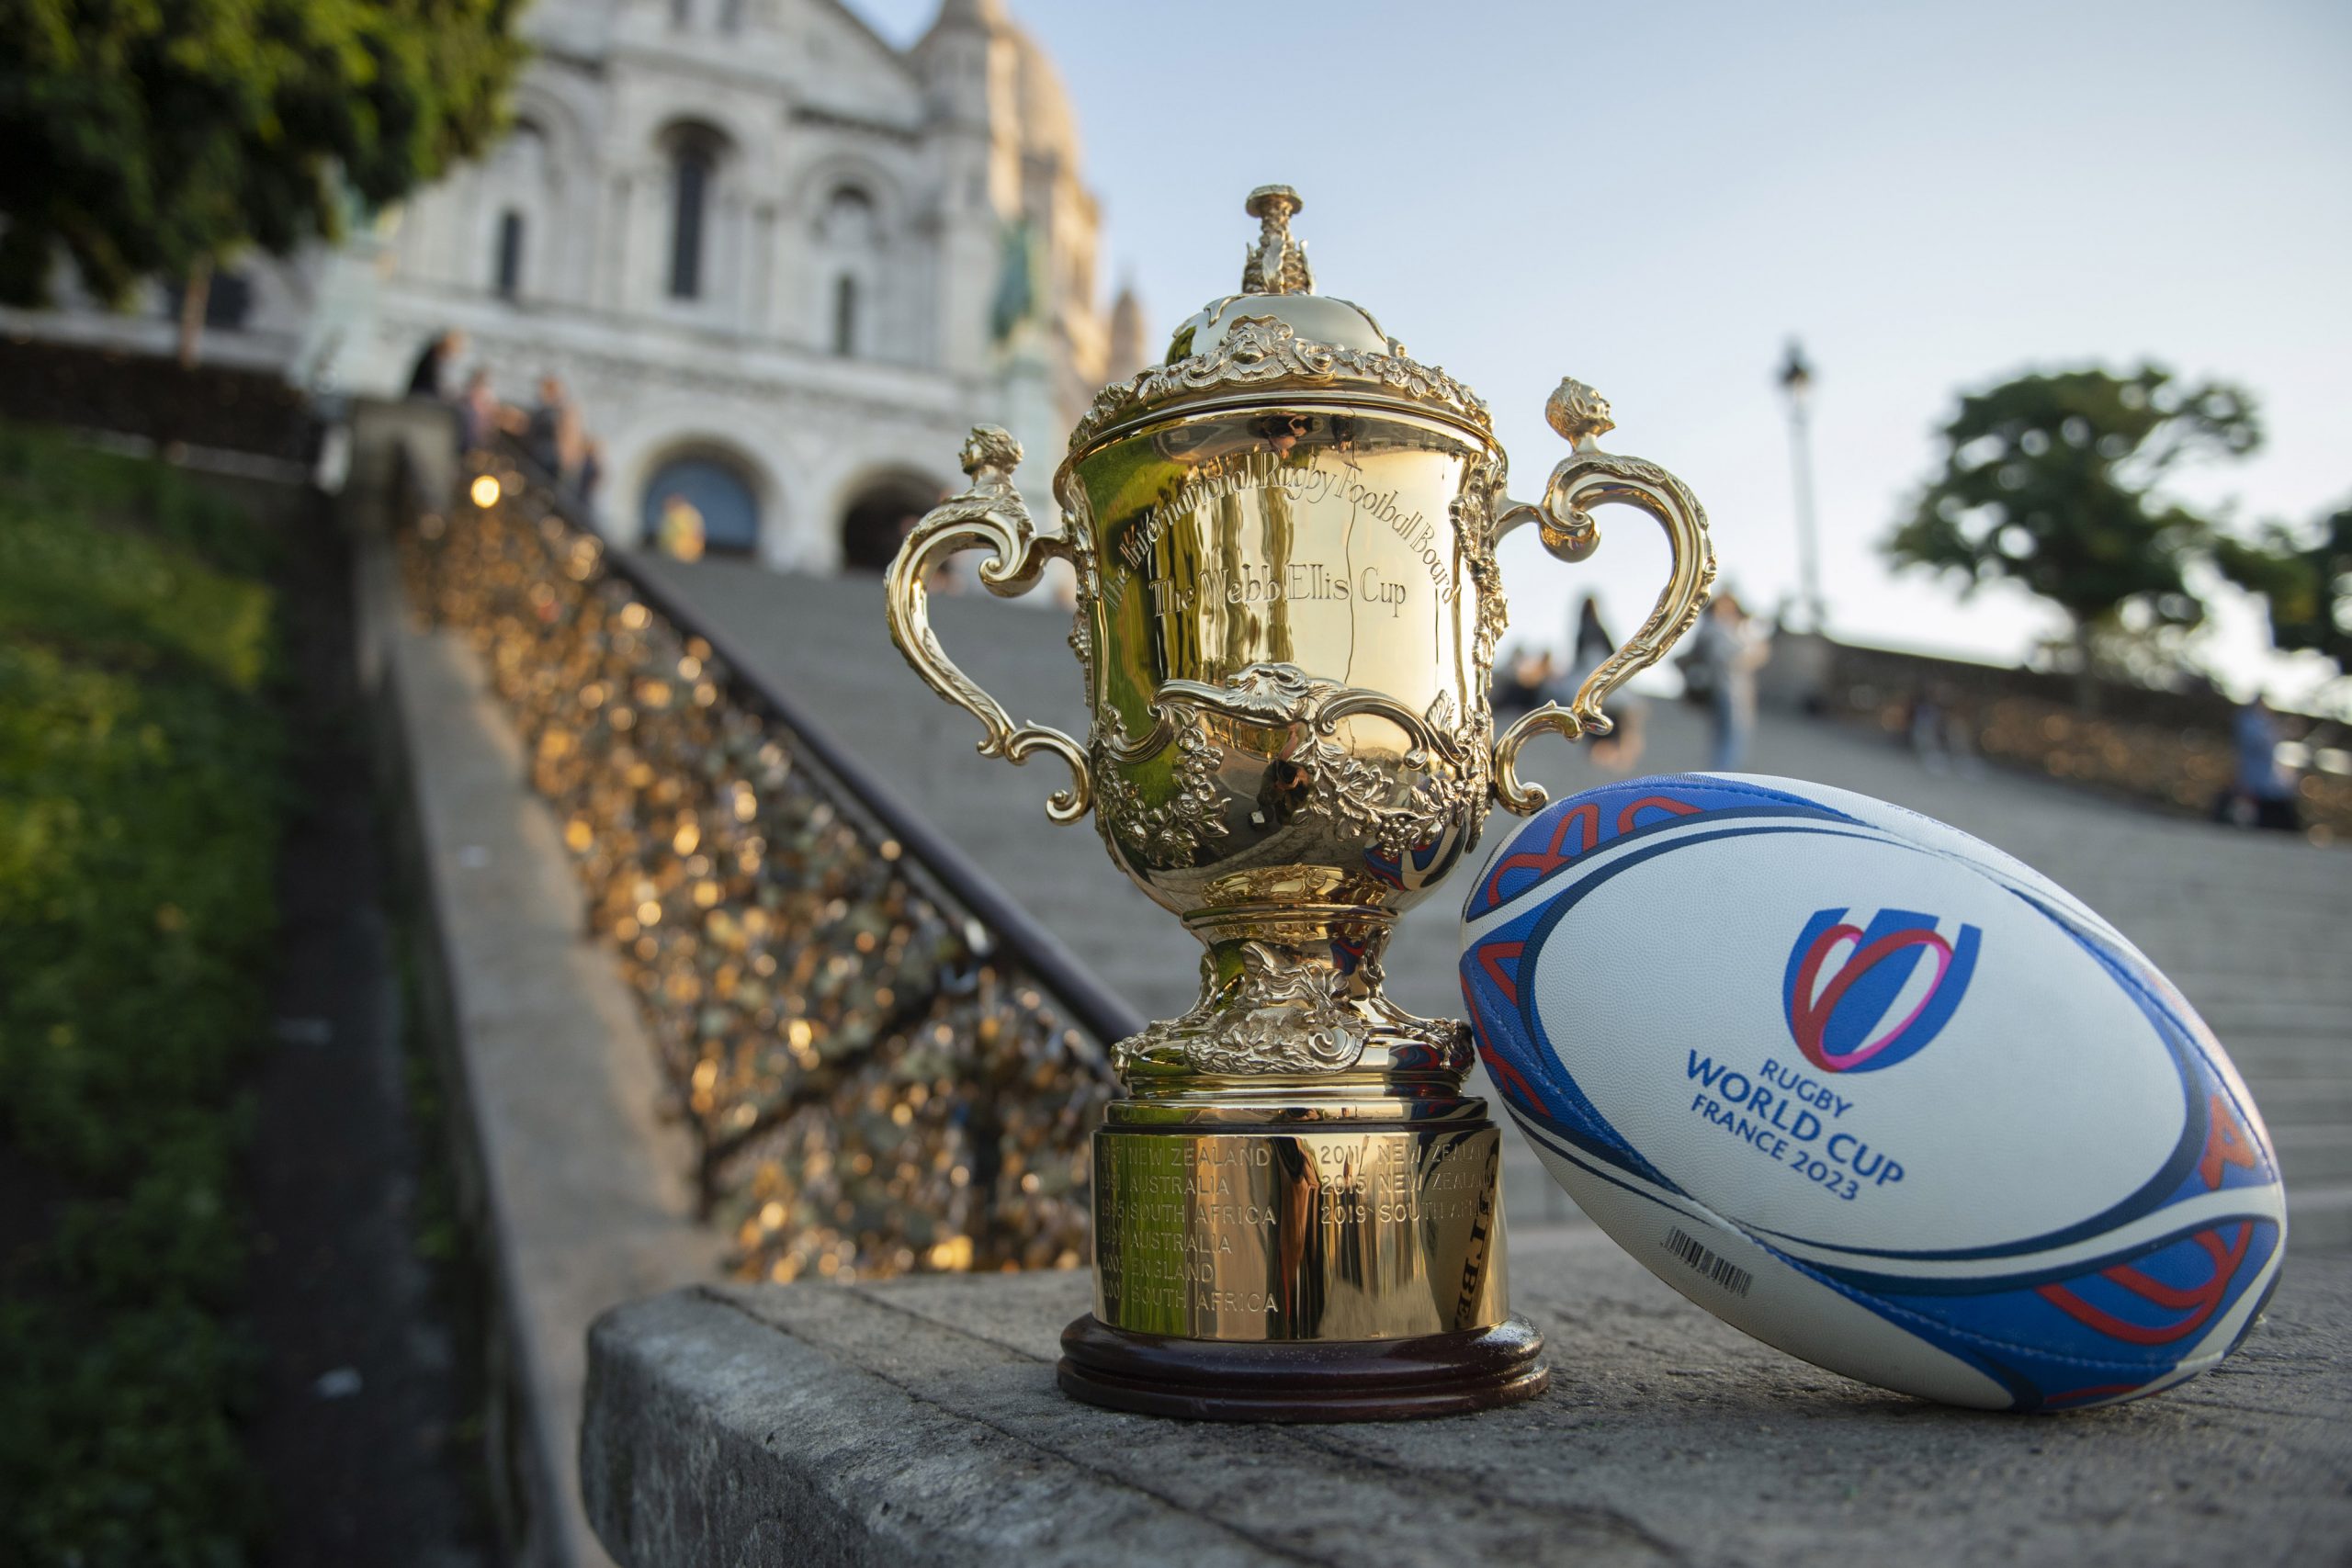 2023 රග්බි ලෝක කුසලානයේ මොනවද මේ වෙන්නෙ - What will happen in the 2023 Rugby World Cup?